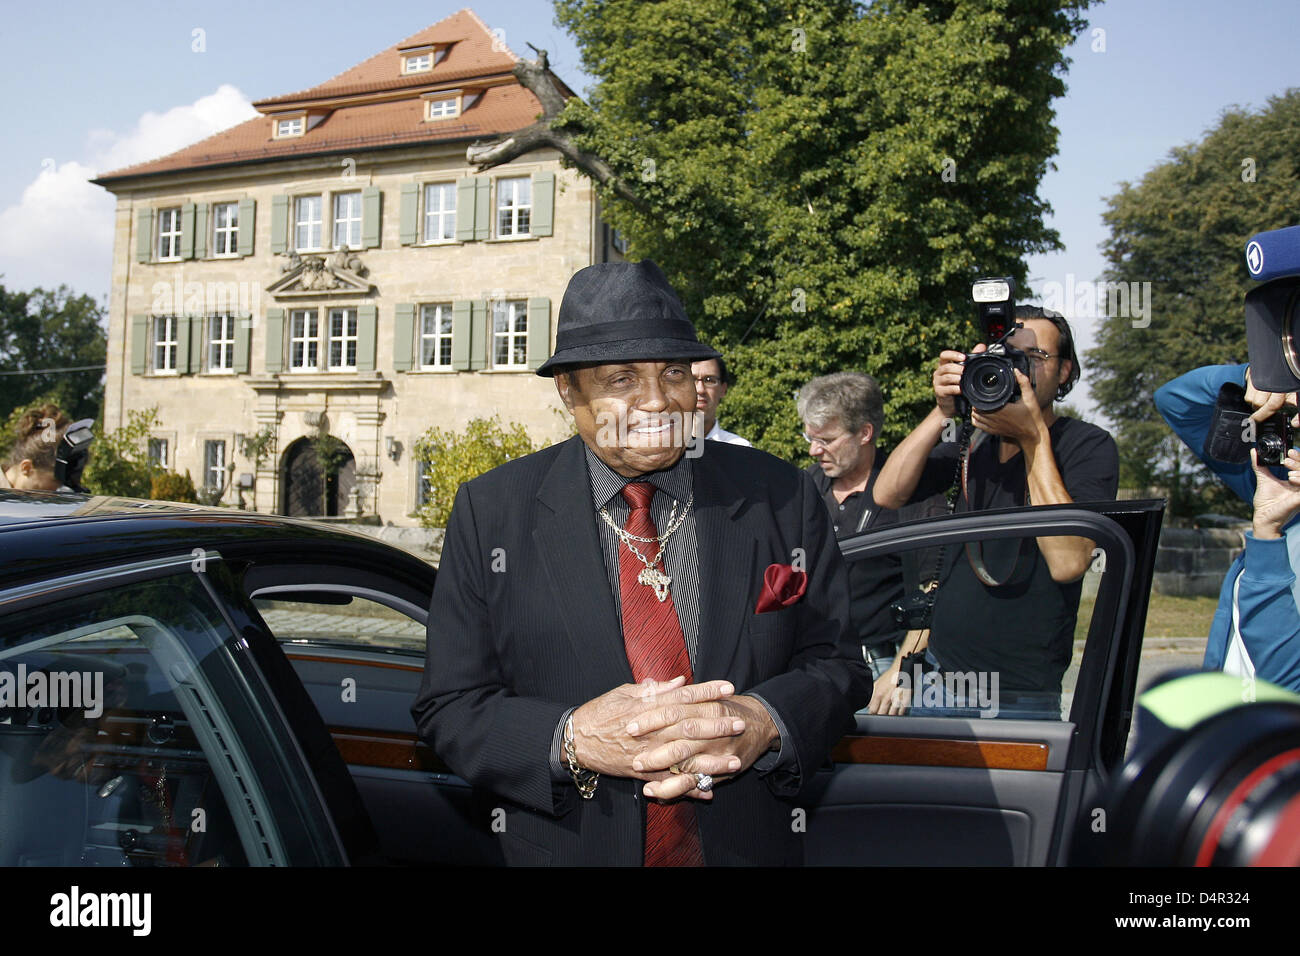 Joseph Jackson, Vater des späten Popstar Michael Jackson, umgeben von Fotografen und Kameraleuten bei seinem Besuch in Schloss Atzelsberg bei Marloffstein, Deutschland, 21. September 2009. Foto: DANIEL KARMANN Stockfoto